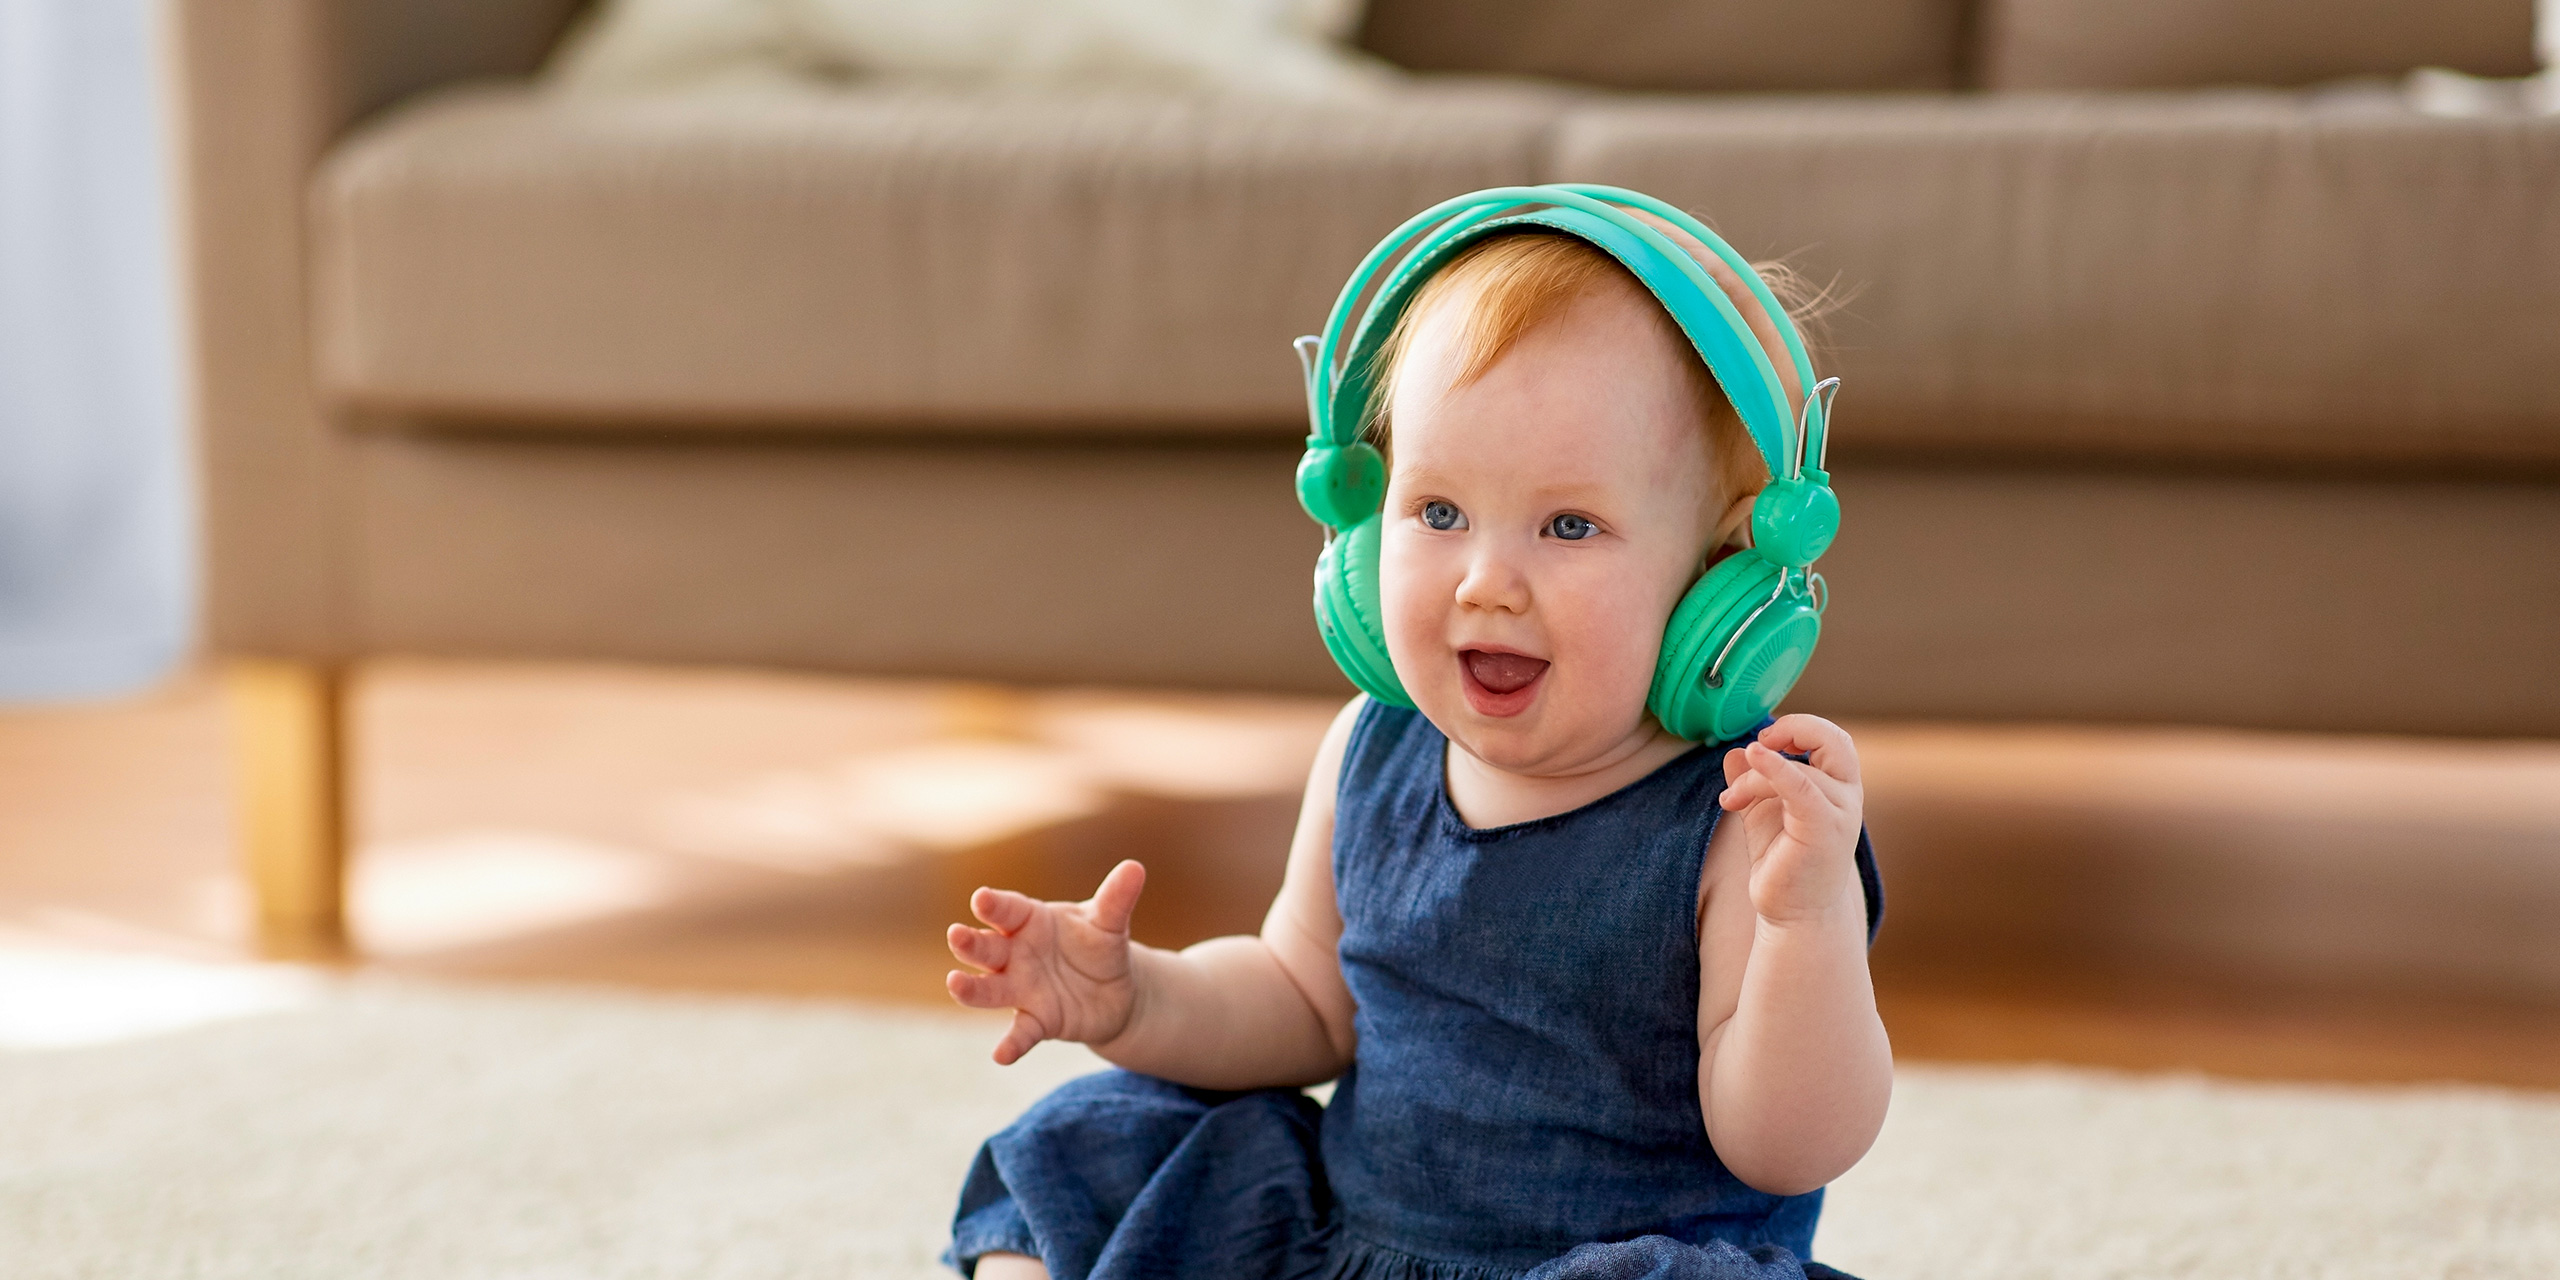 baby wearing headphones